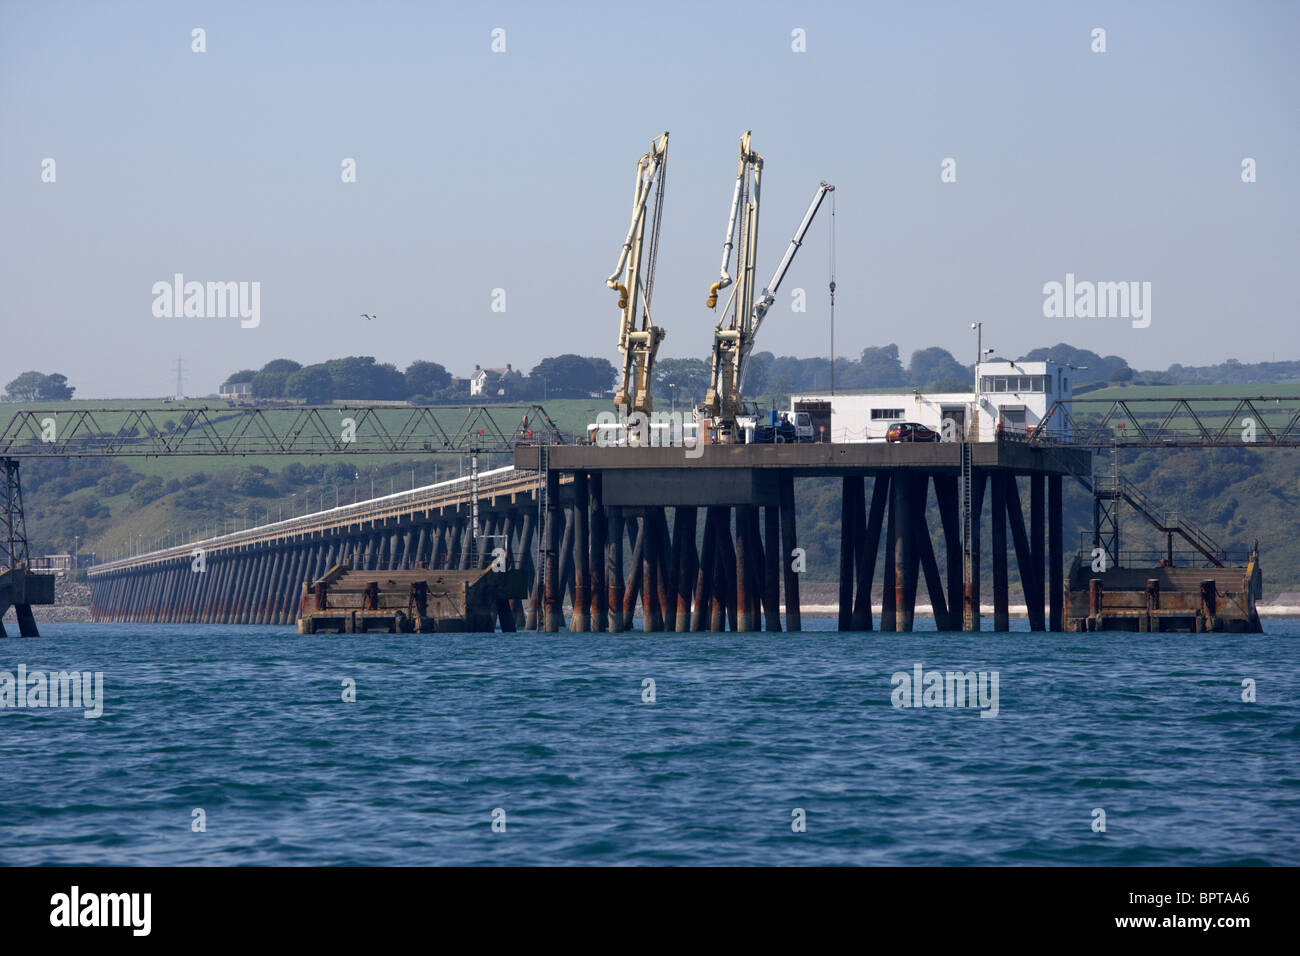 Ende des Stegs am Cloghan Punkt Ölhafen in Belfast Lough Nordirland Vereinigtes Königreich Stockfoto